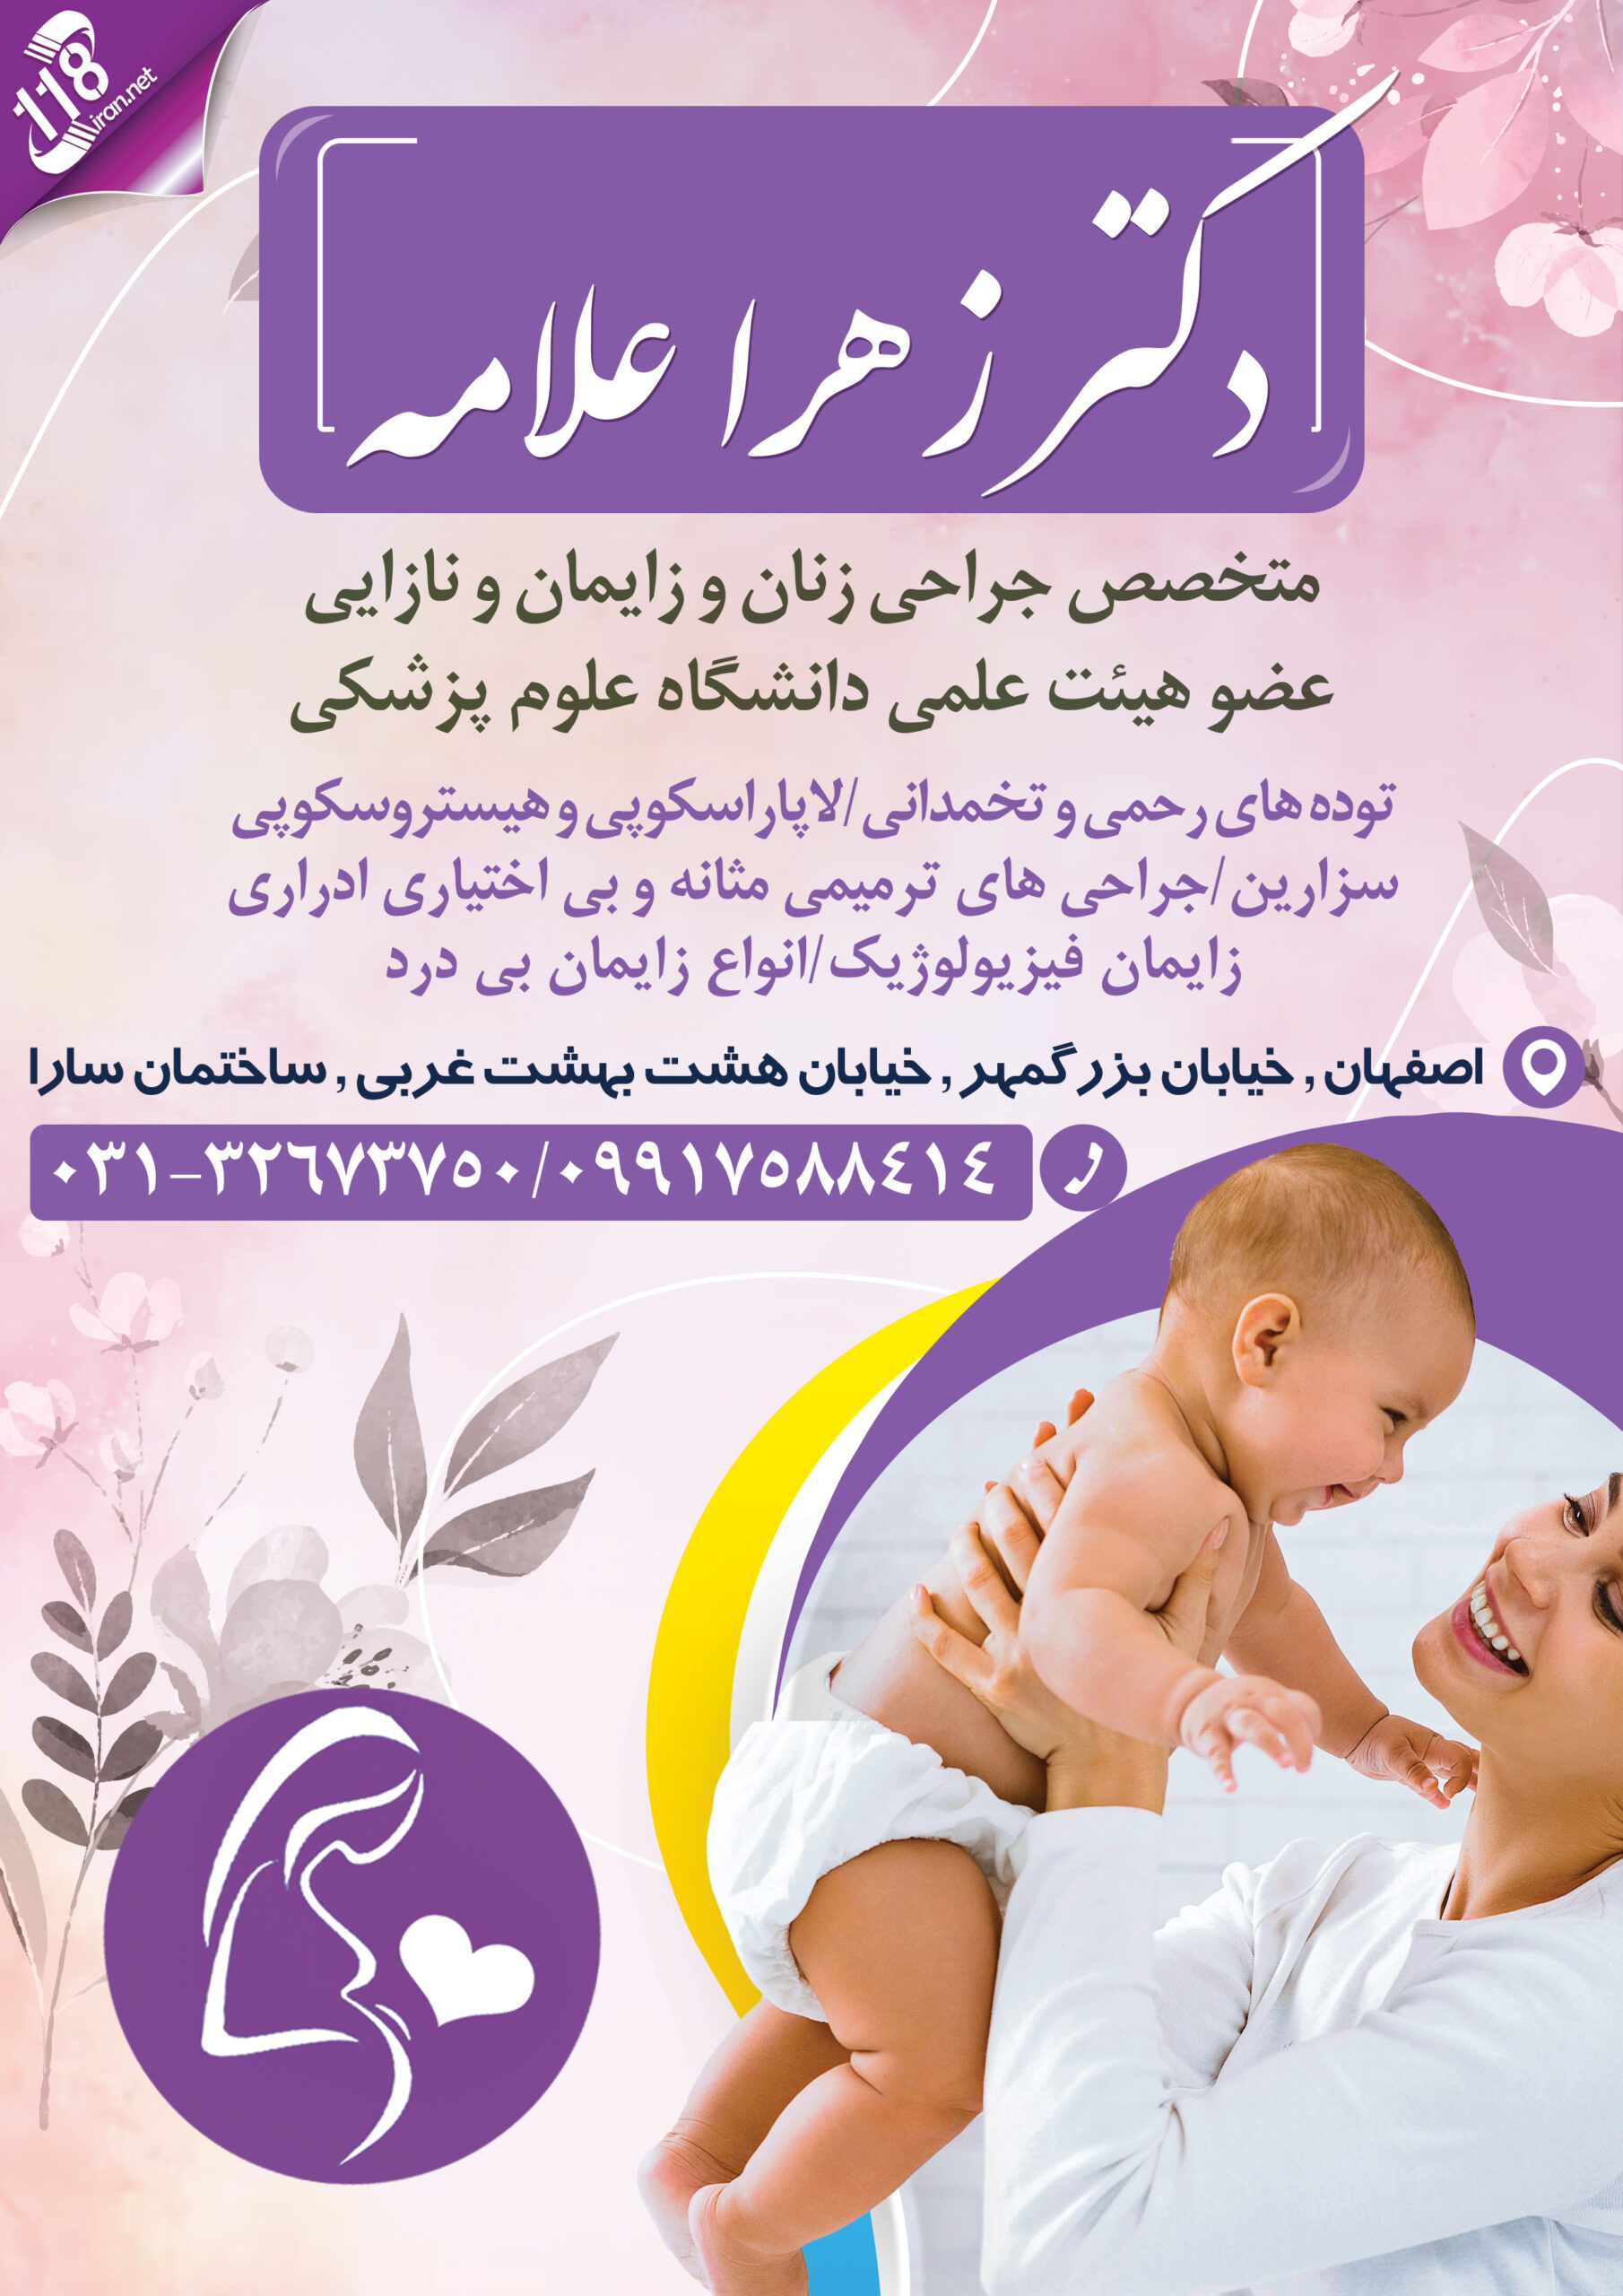  دکتر زهرا علامه در اصفهان